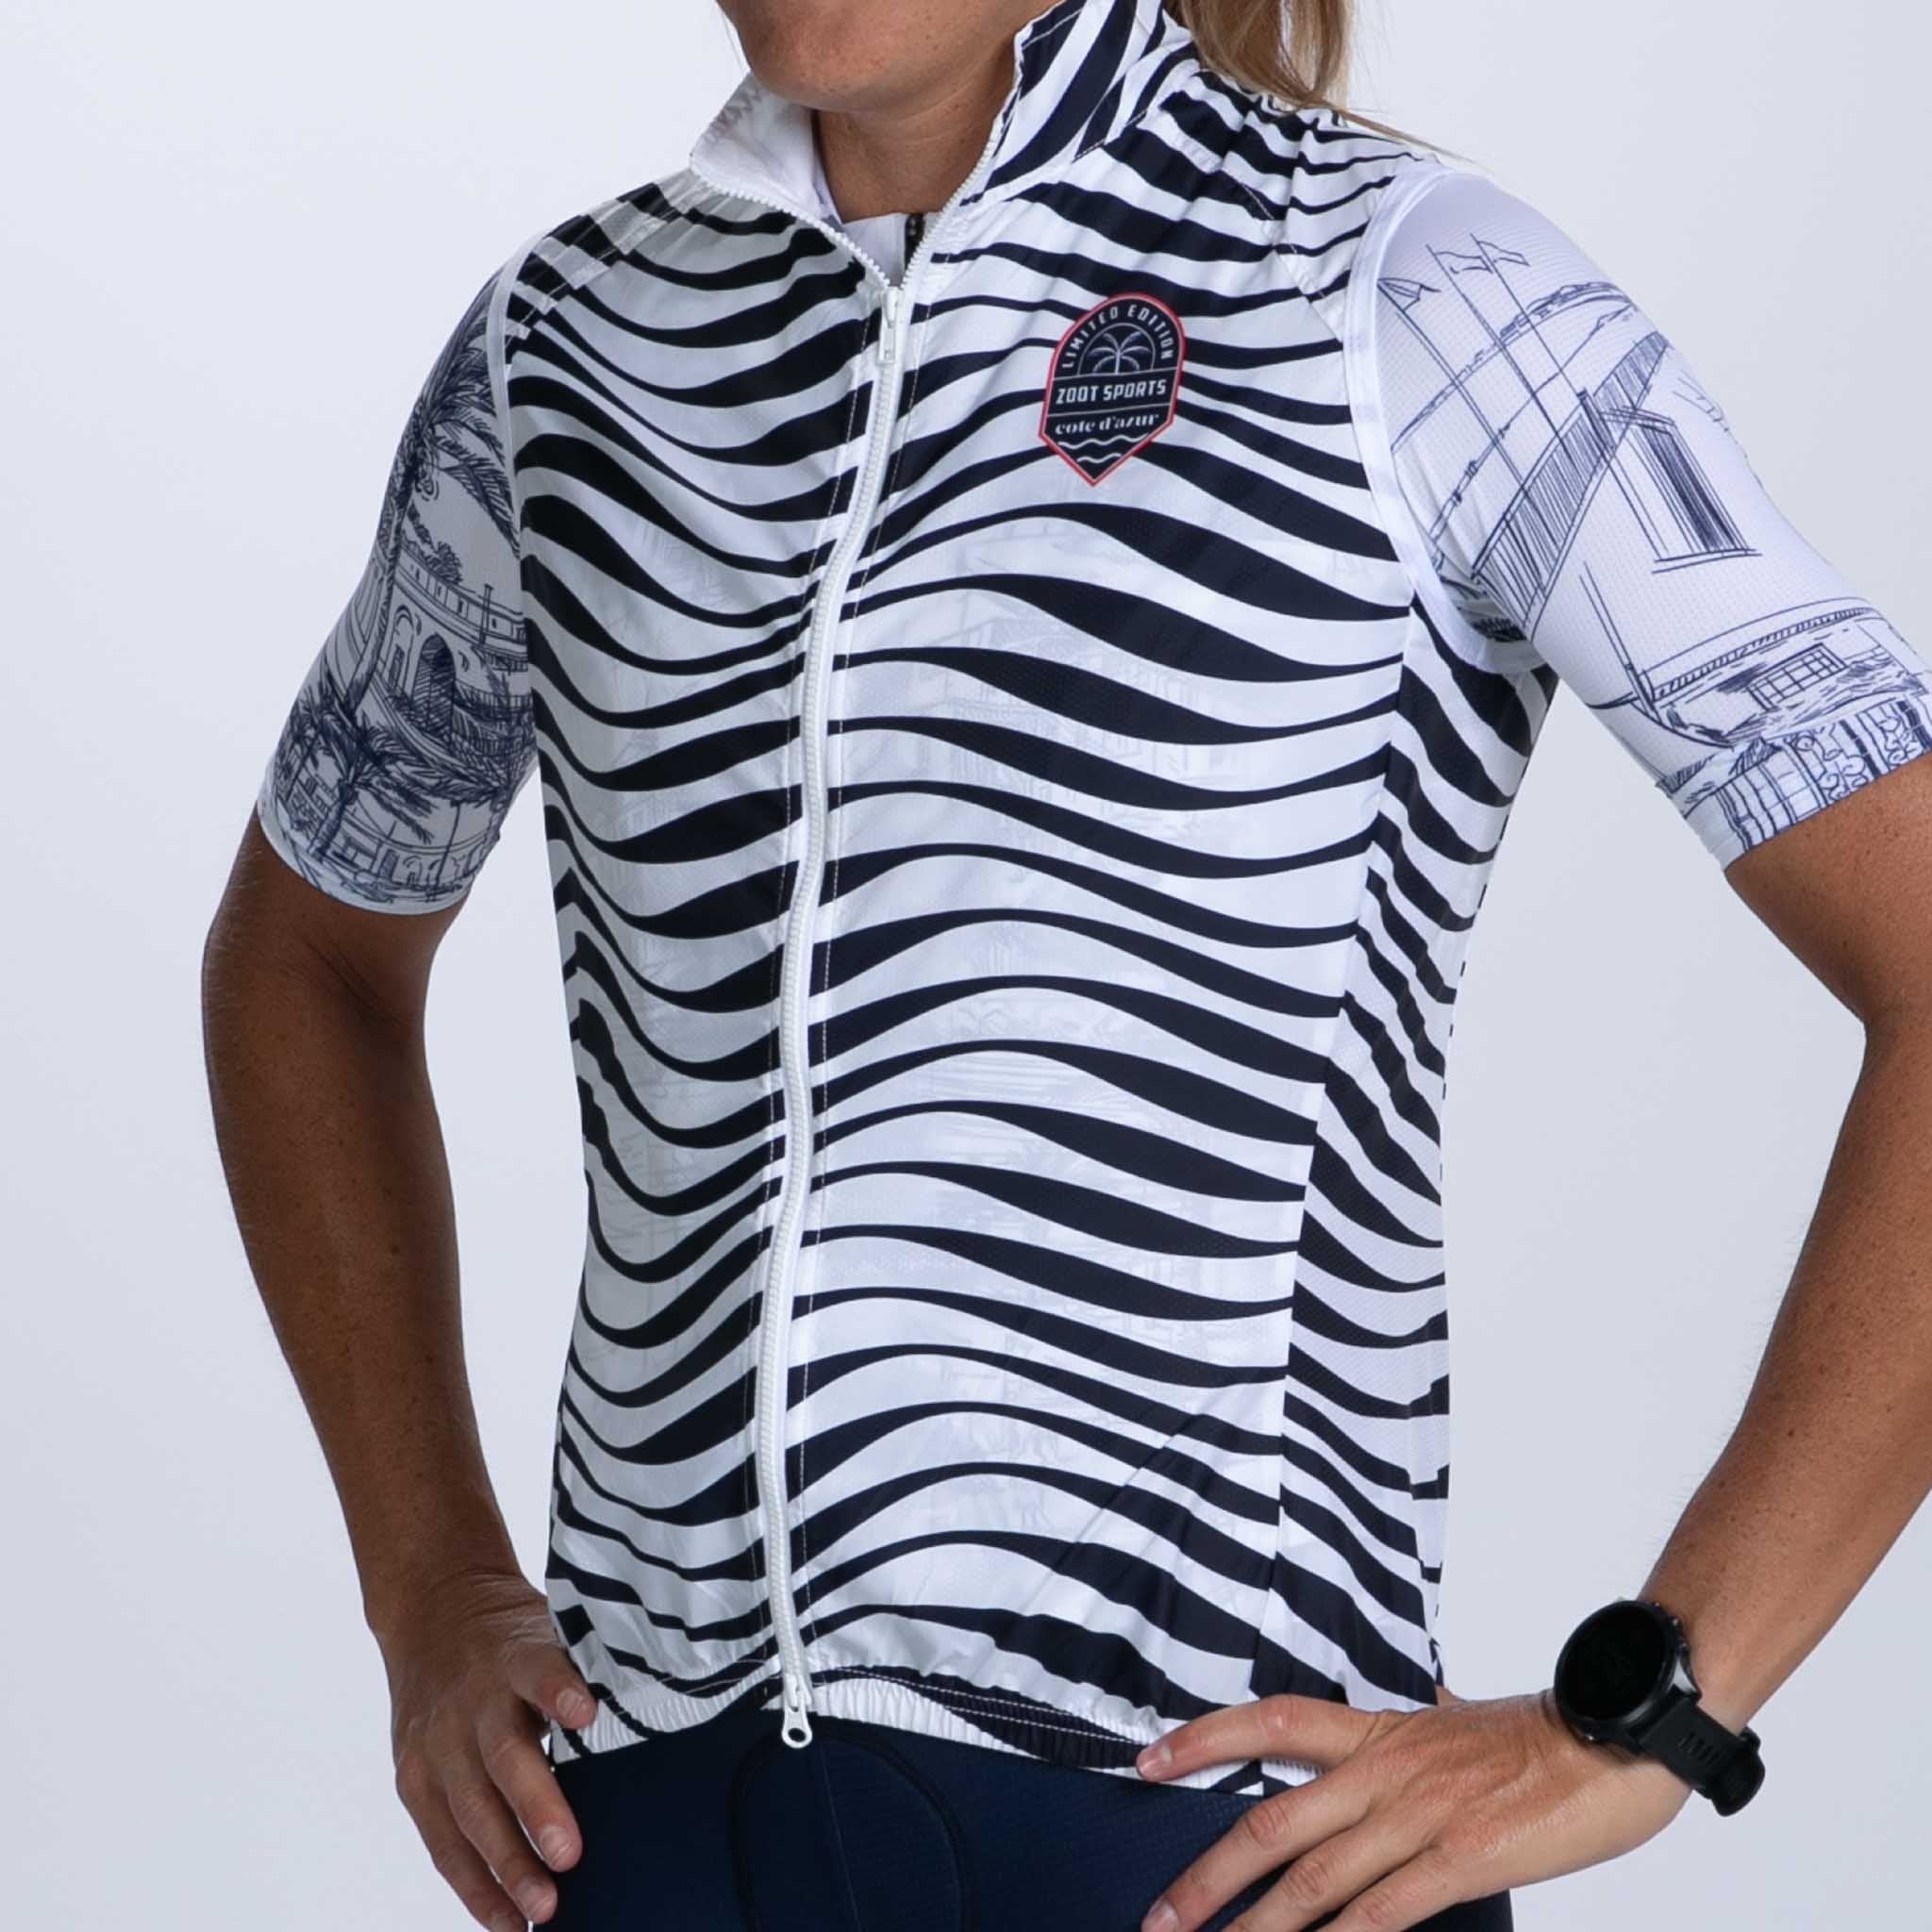 Zoot Sports CYCLE VESTS Women's Ltd Cycle Vest - Cote d'Azur